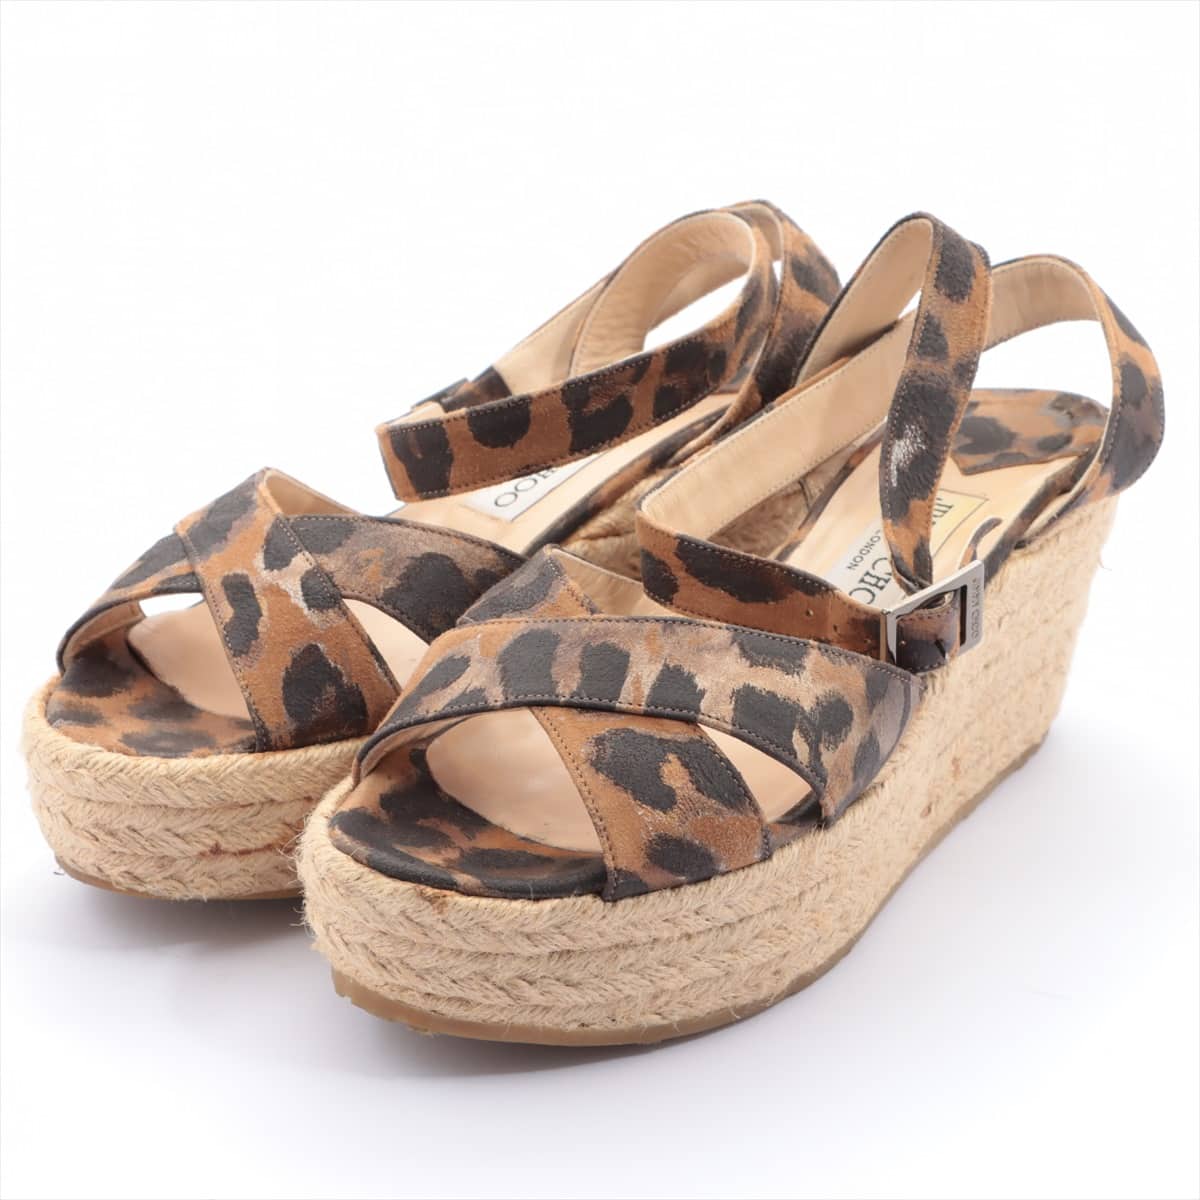 Jimmy Choo Suede Wedge Sole Sandals 36.5 Ladies' Black × Brown Leopard pattern